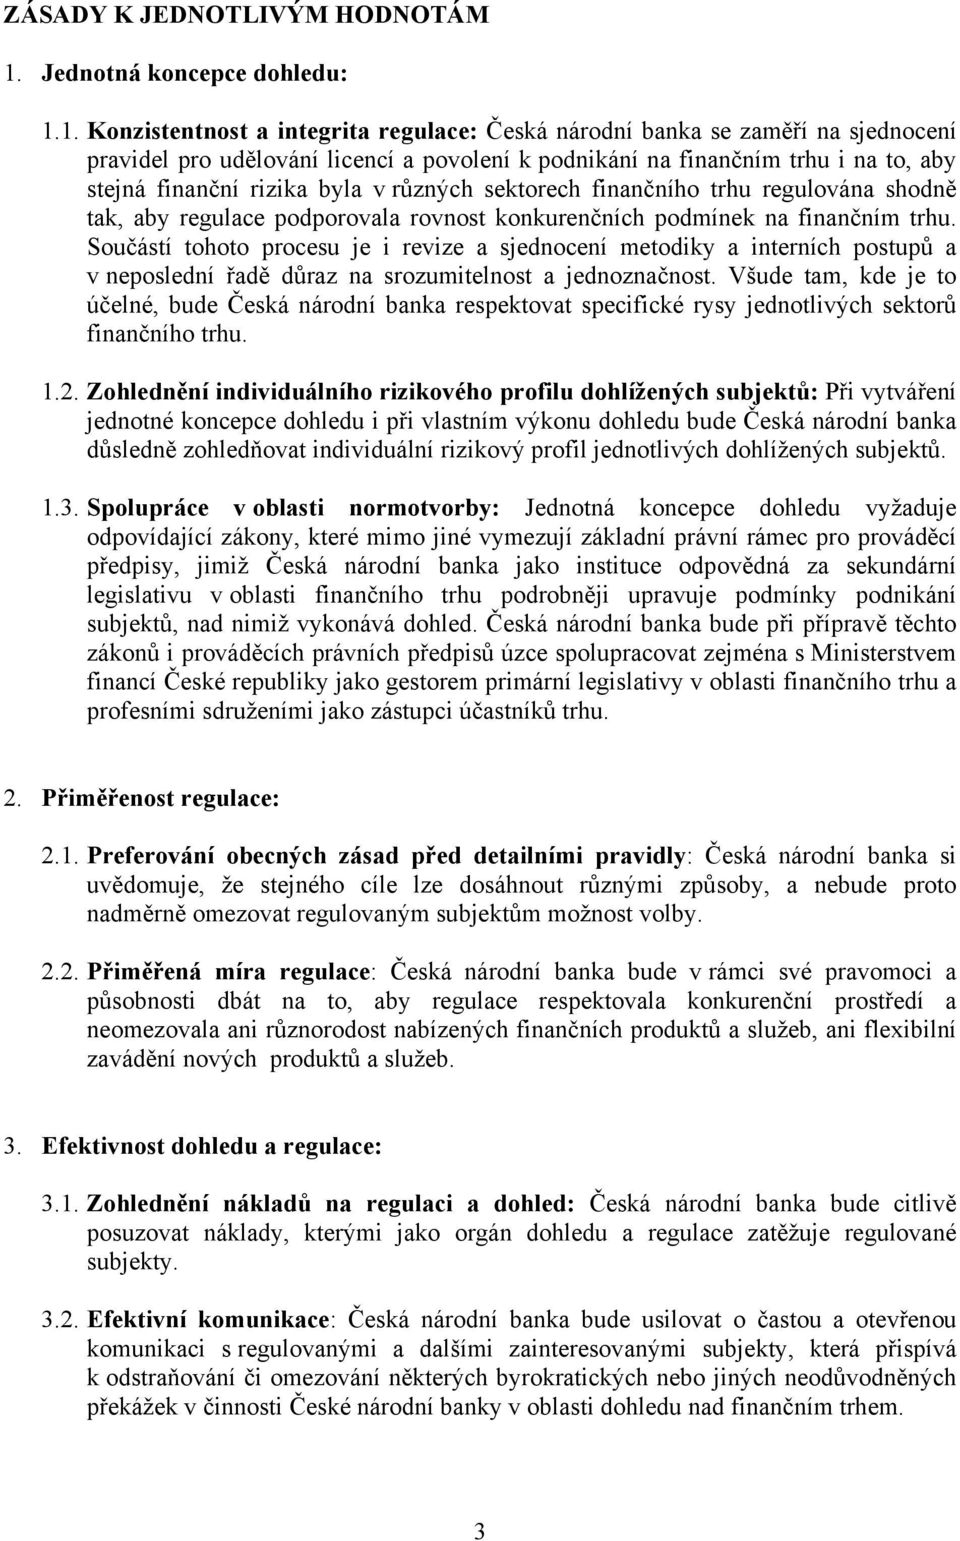 1. Konzistentnost a integrita regulace: Česká národní banka se zaměří na sjednocení pravidel pro udělování licencí a povolení k podnikání na finančním trhu i na to, aby stejná finanční rizika byla v